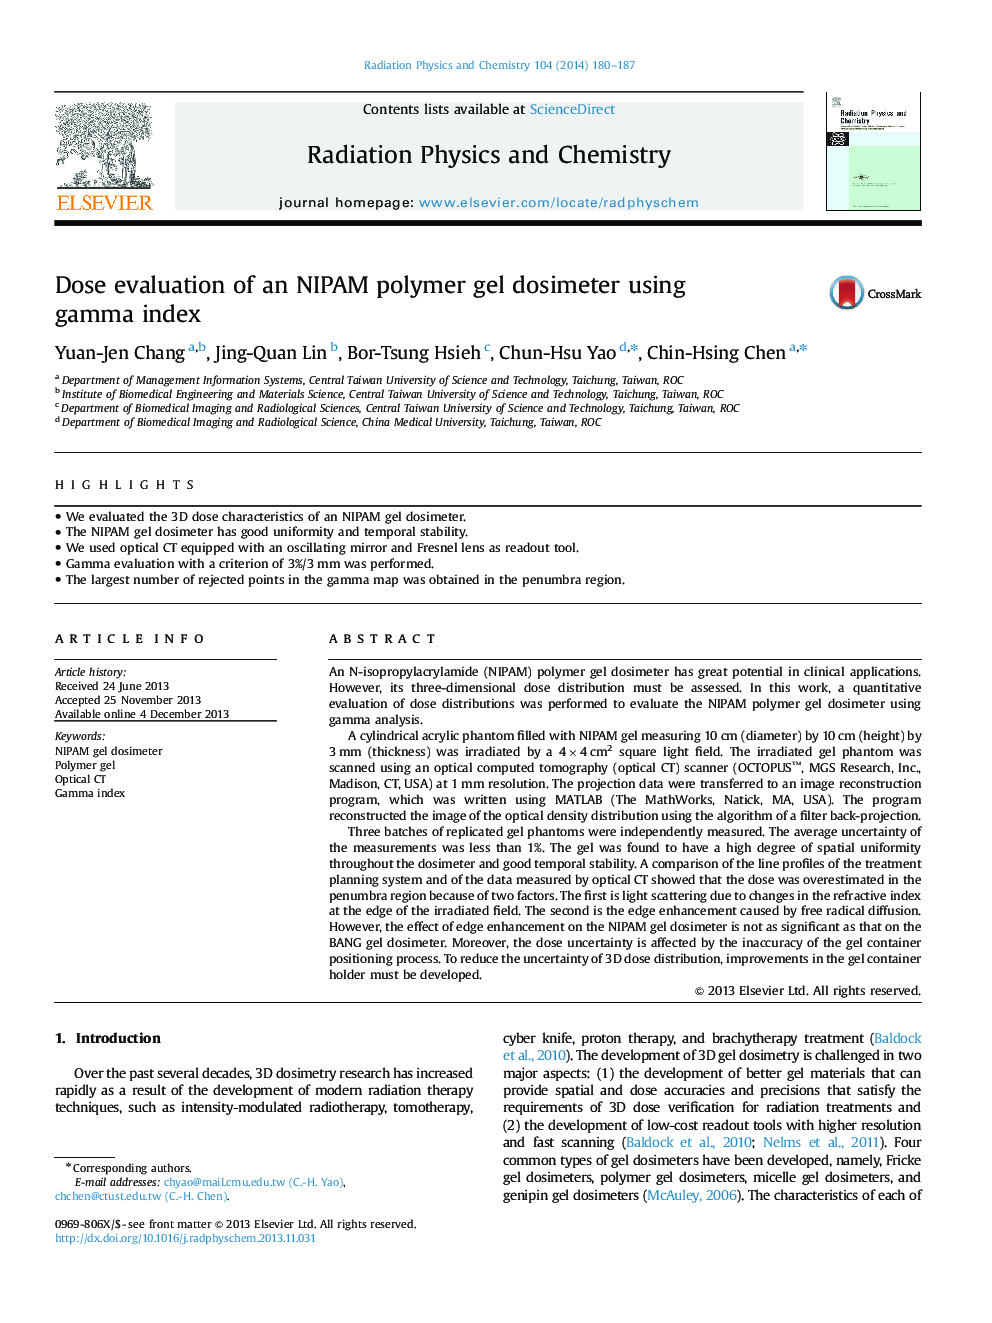 ارزیابی دوز از یک پلیمر ژل ناپام با استفاده از شاخص گاما 